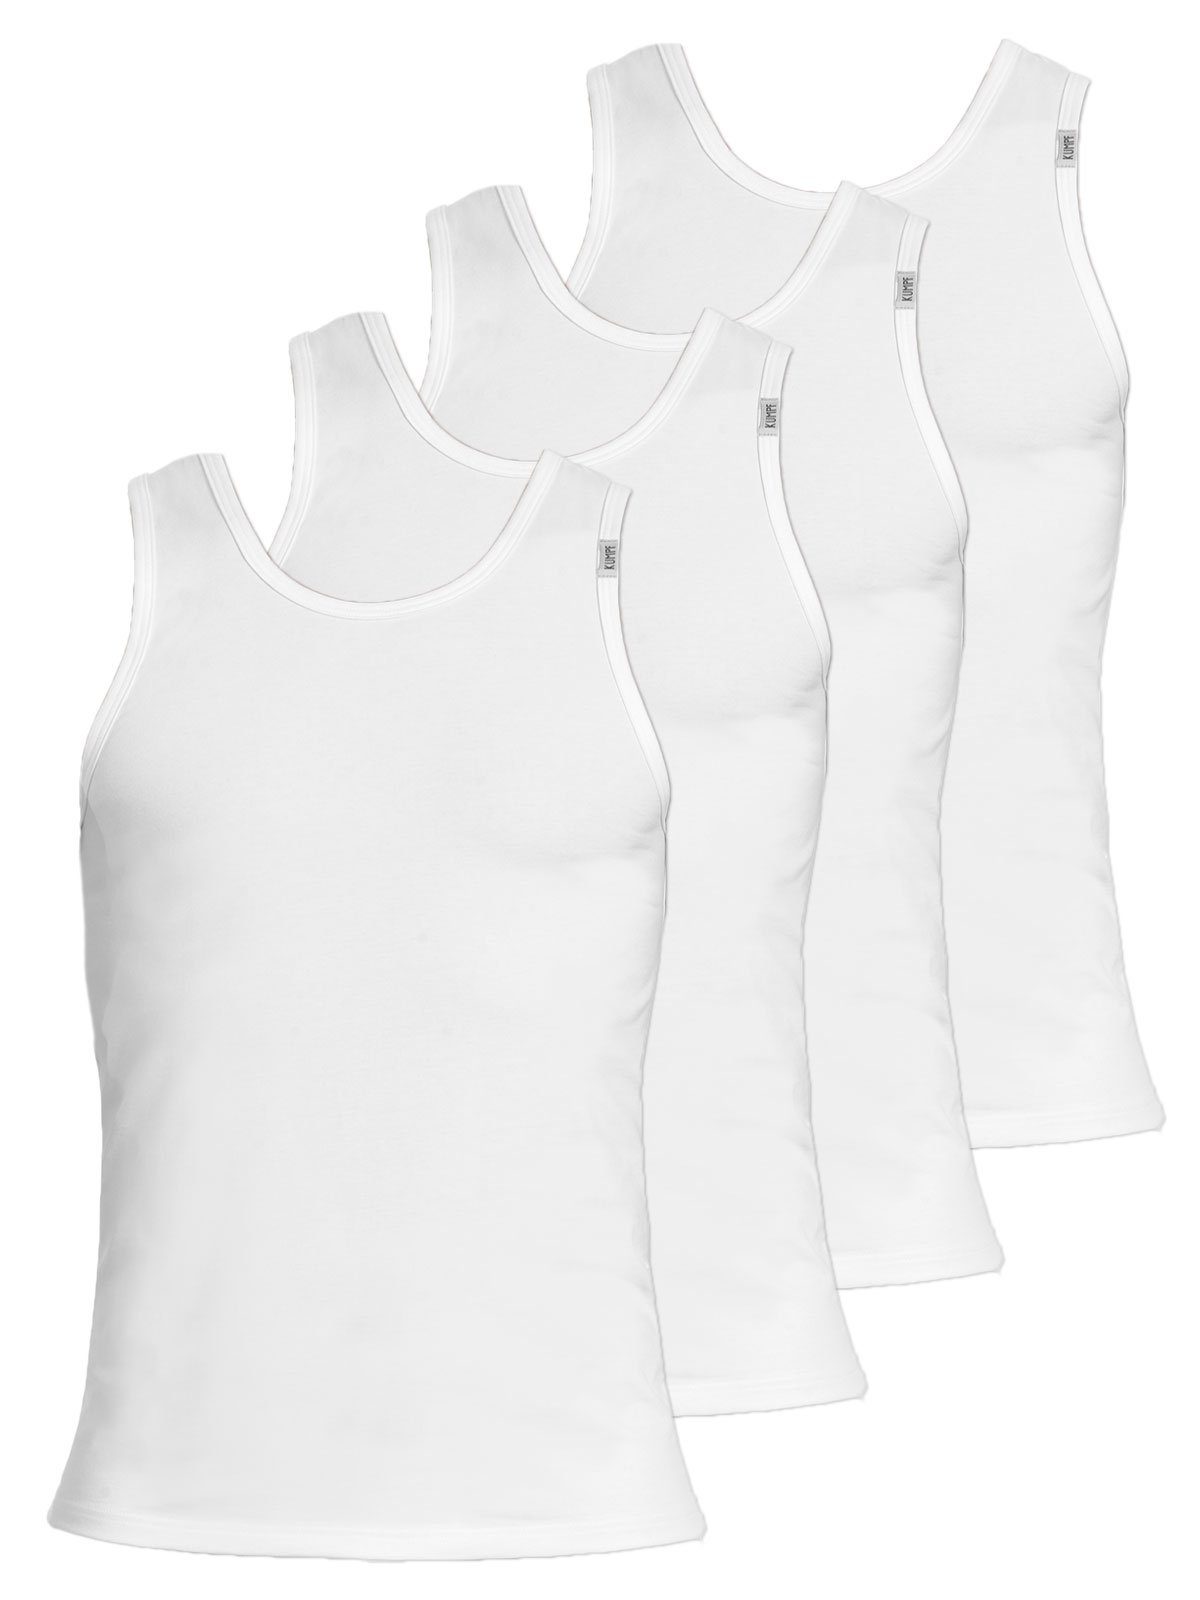 KUMPF Achselhemd 4er Sparpack Herren Unterhemd Bio Cotton (Spar-Set, 4-St) hohe Markenqualität weiss